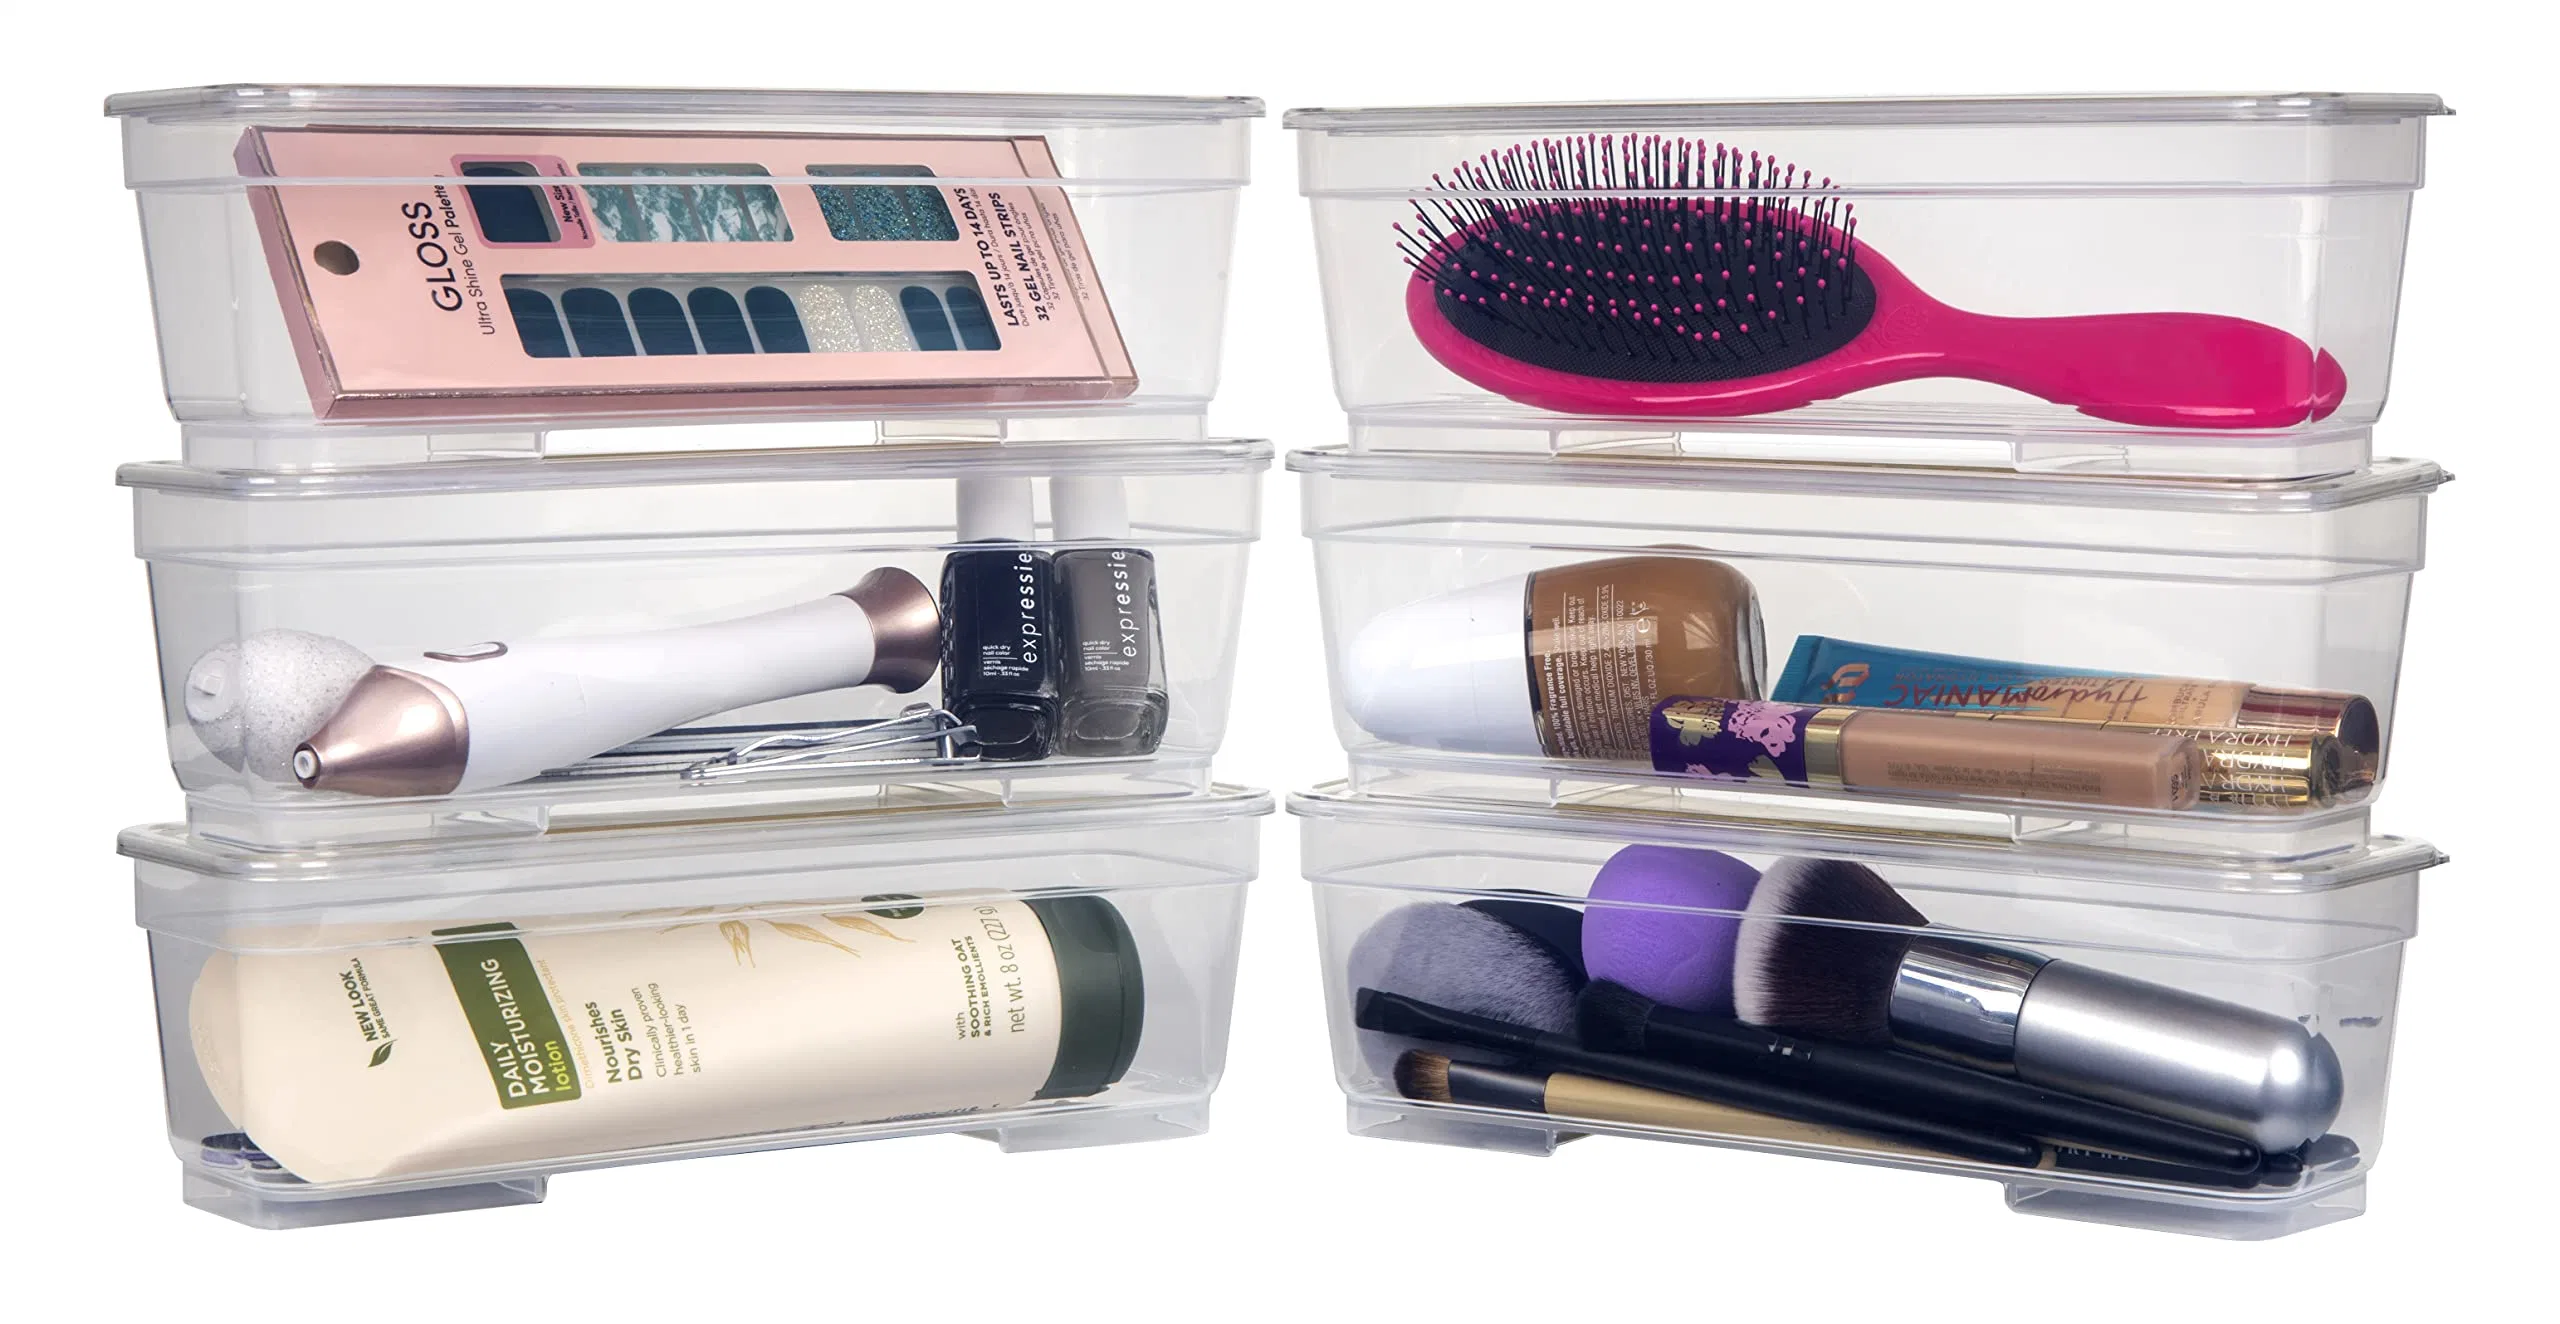 Armazenamento domésticos projeta Bin Pack Longo Home Organizer Caixas de armazenamento com tampas claro translúcido